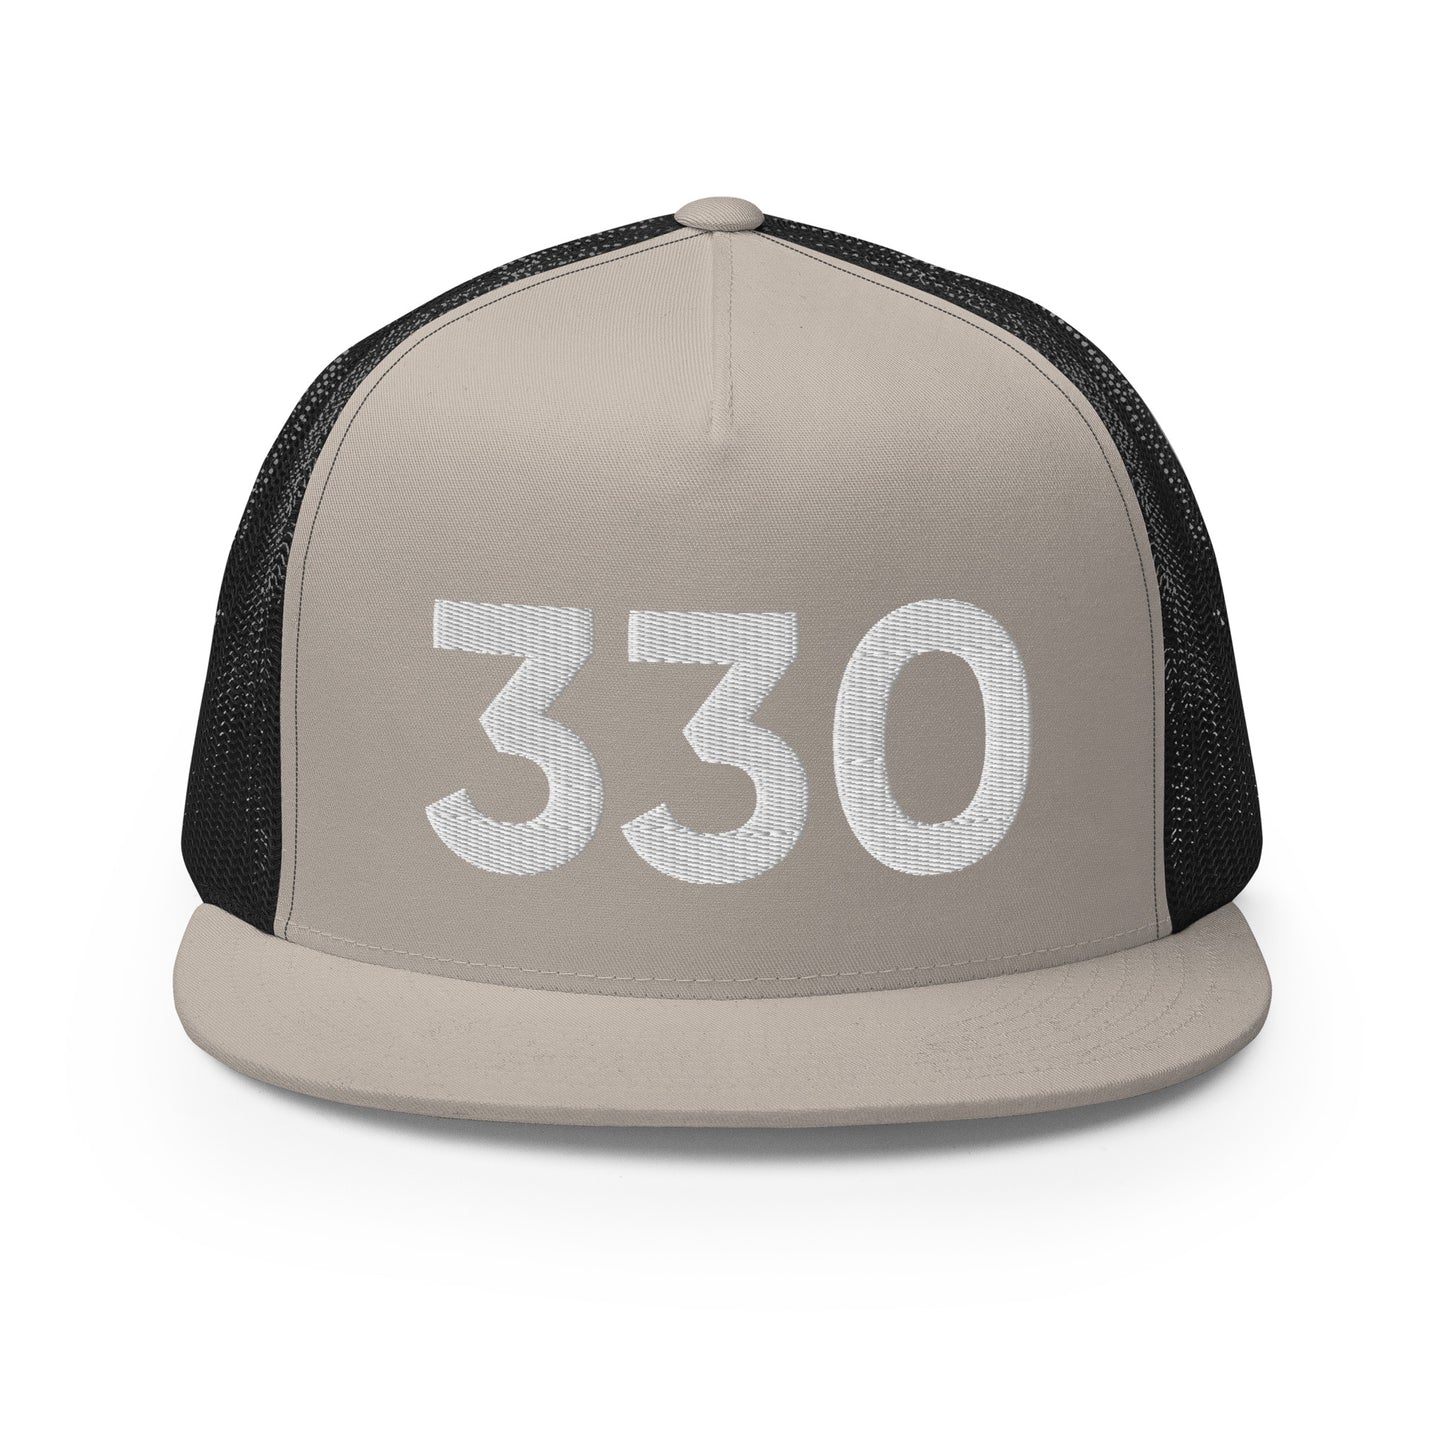 330 Cleveland Trucker Hat